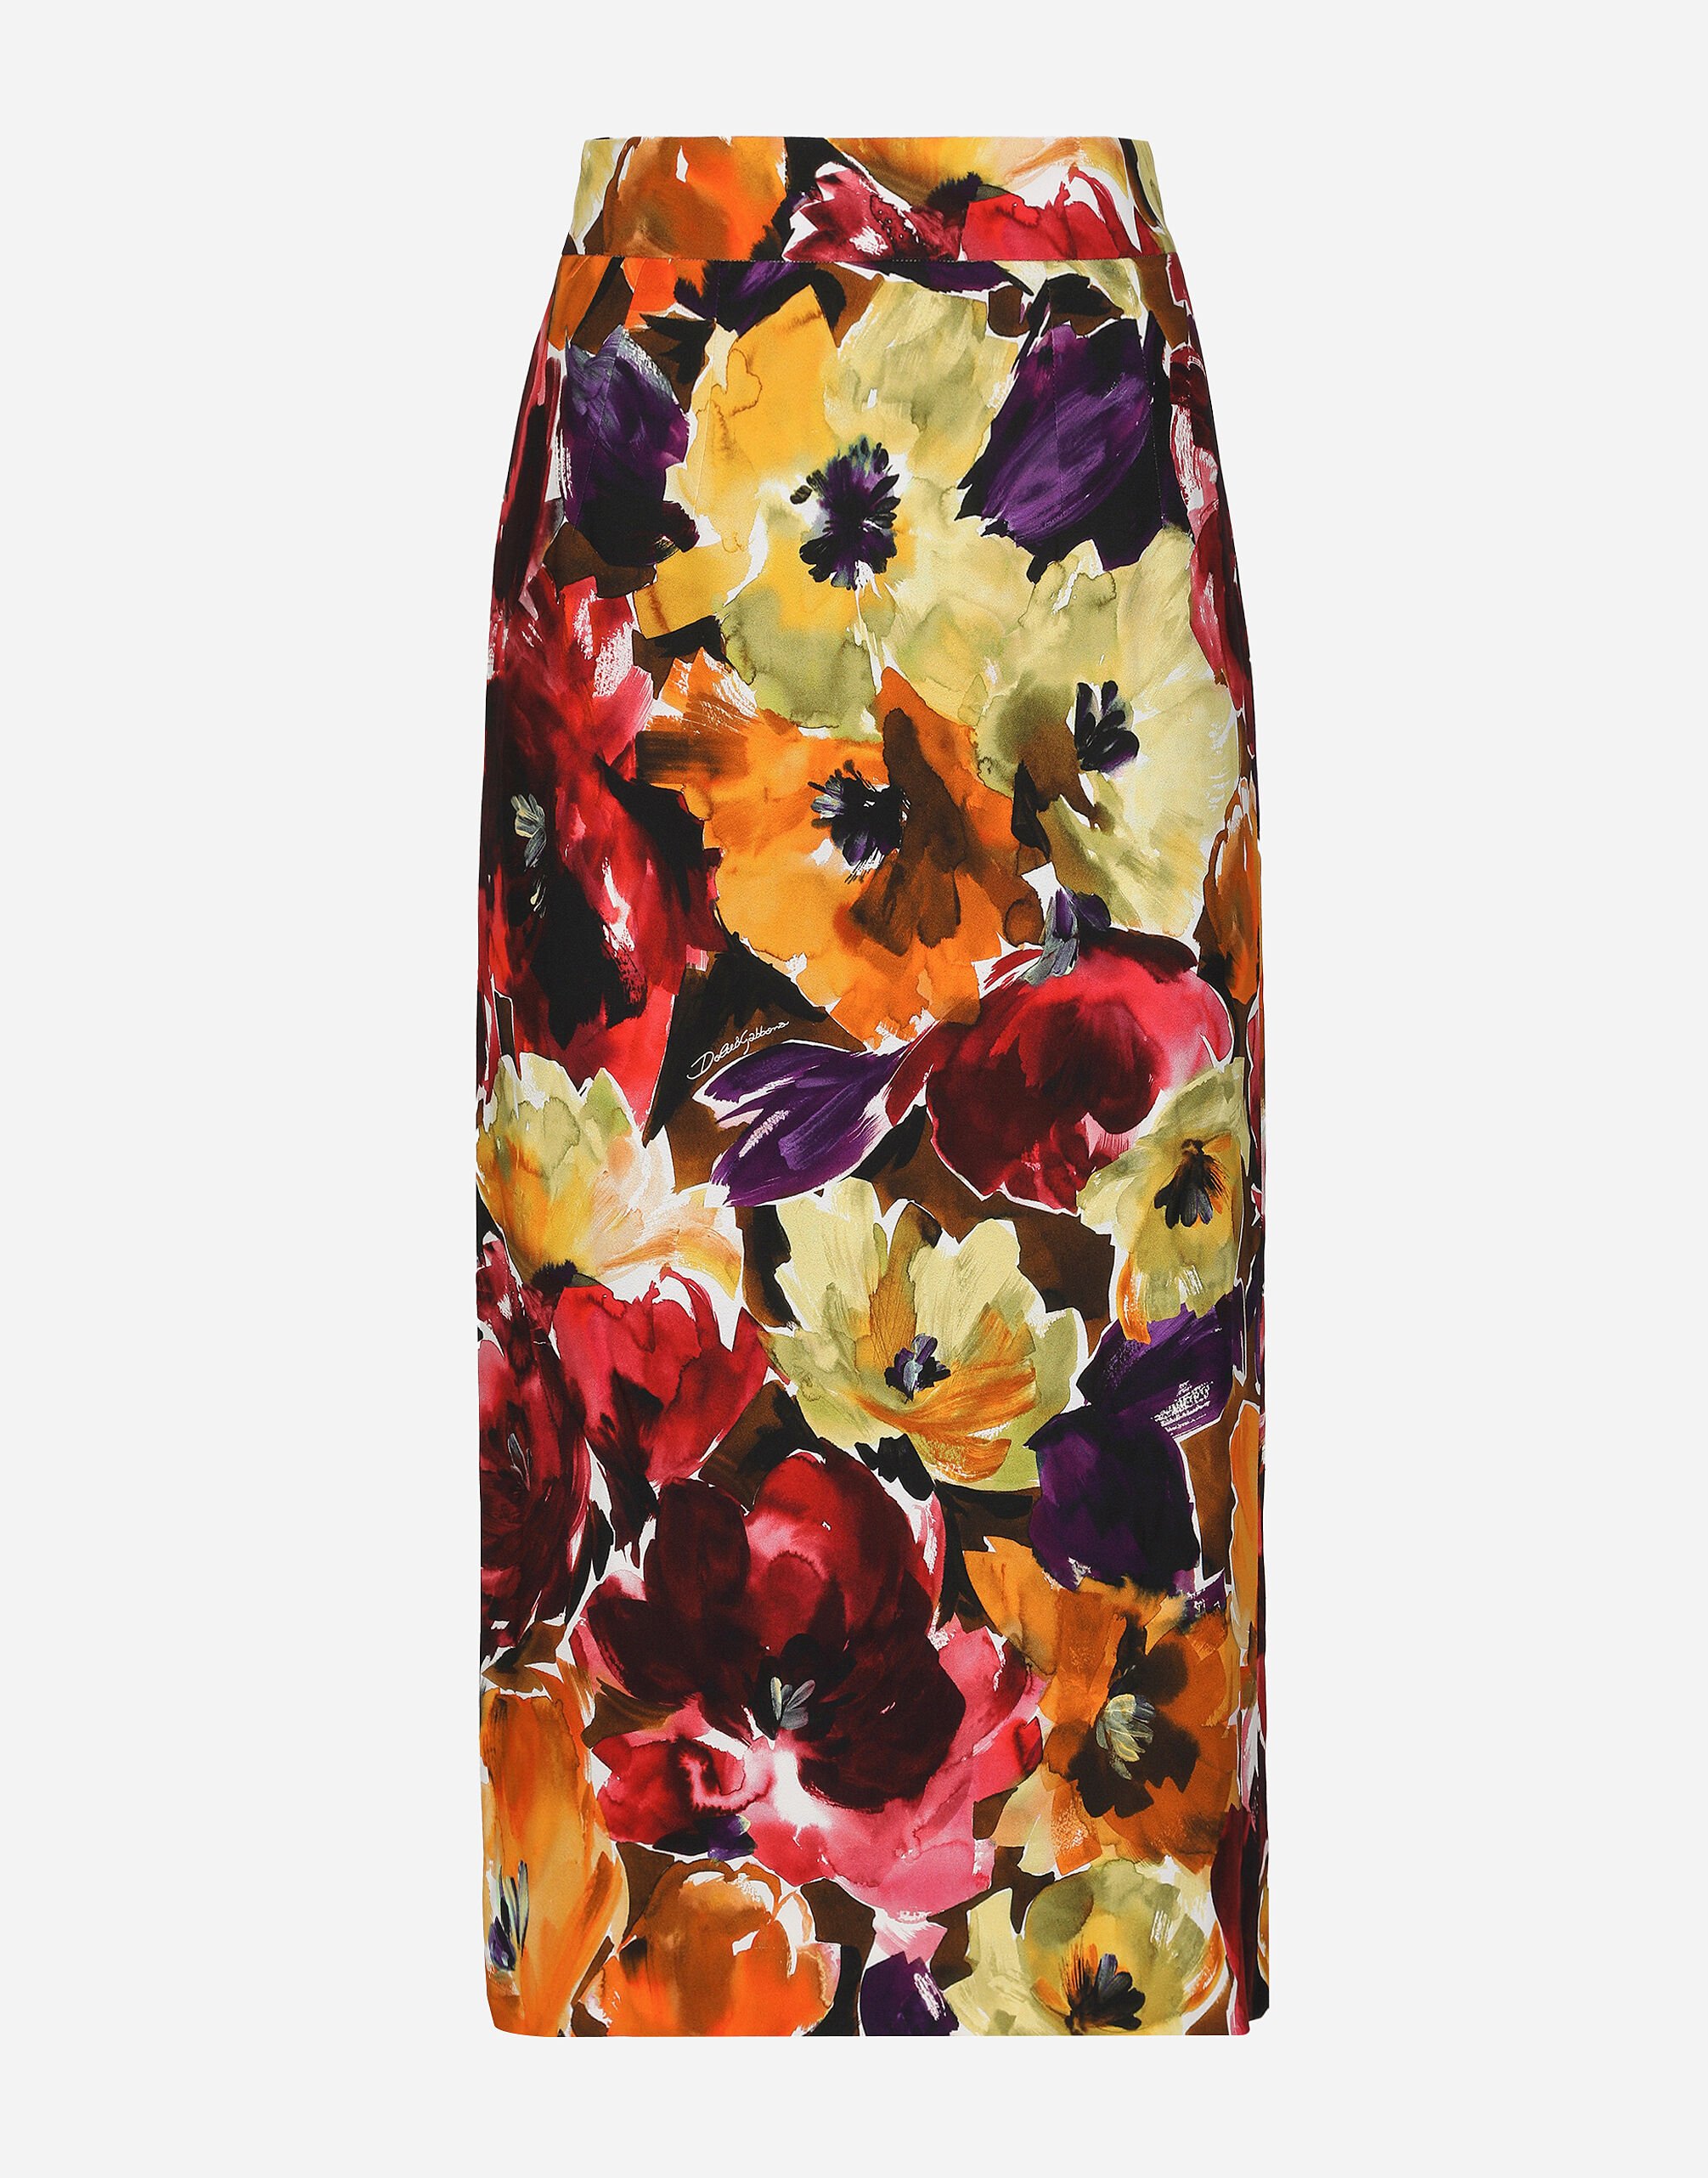 Dolce & Gabbana Cady calf-length skirt with abstract flower print Print F4CWBTHS5R7